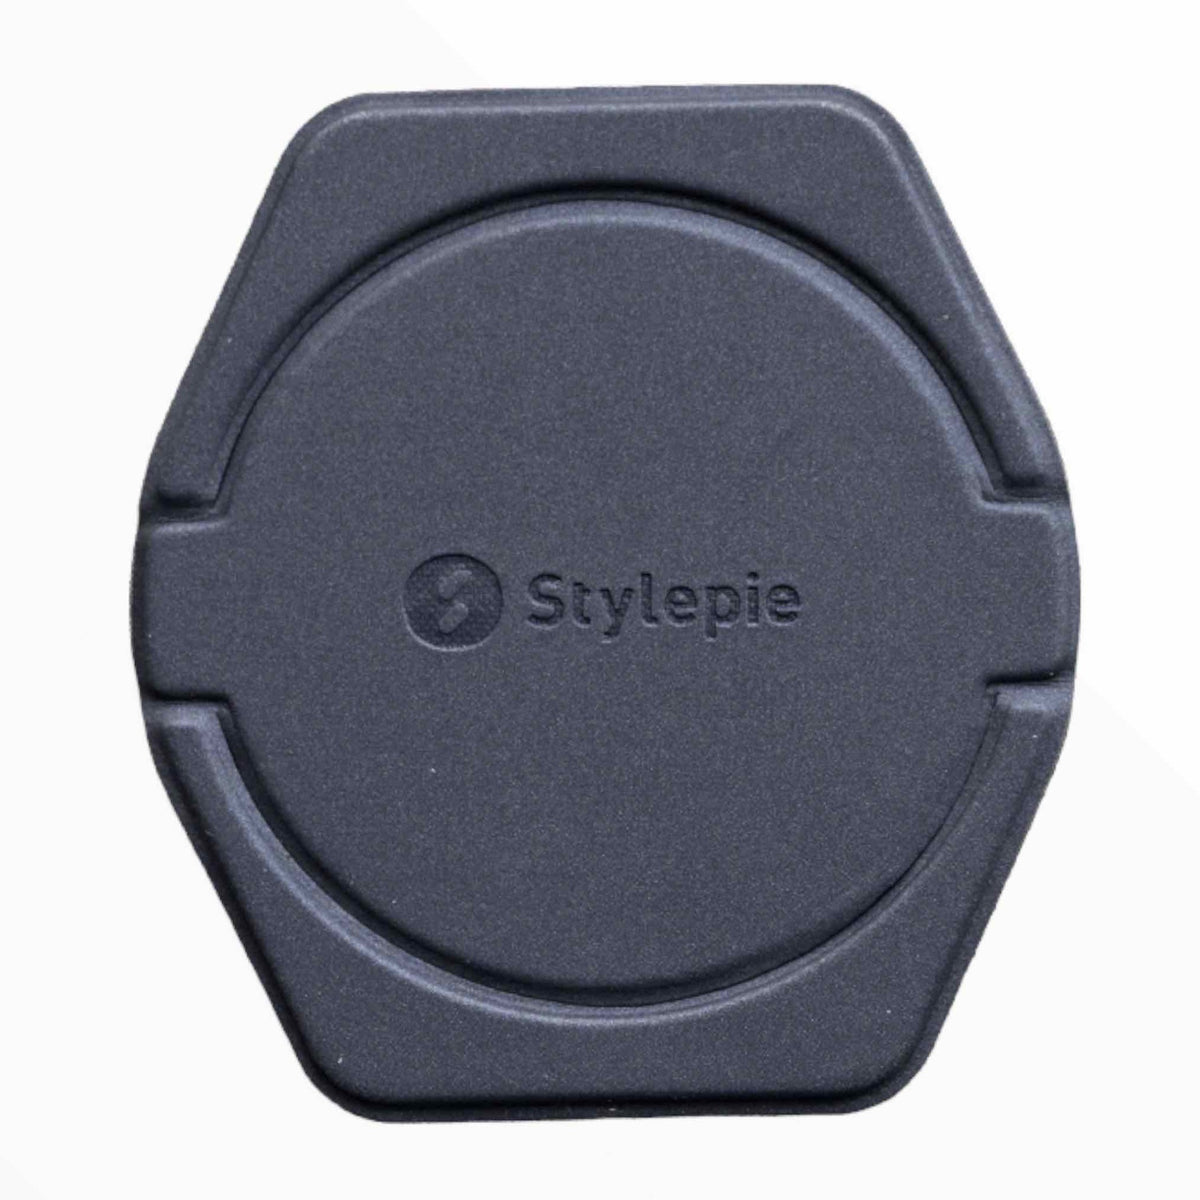 Accesorios GEN stylepie holder para celular, compatible con magsafe - gris oscuro